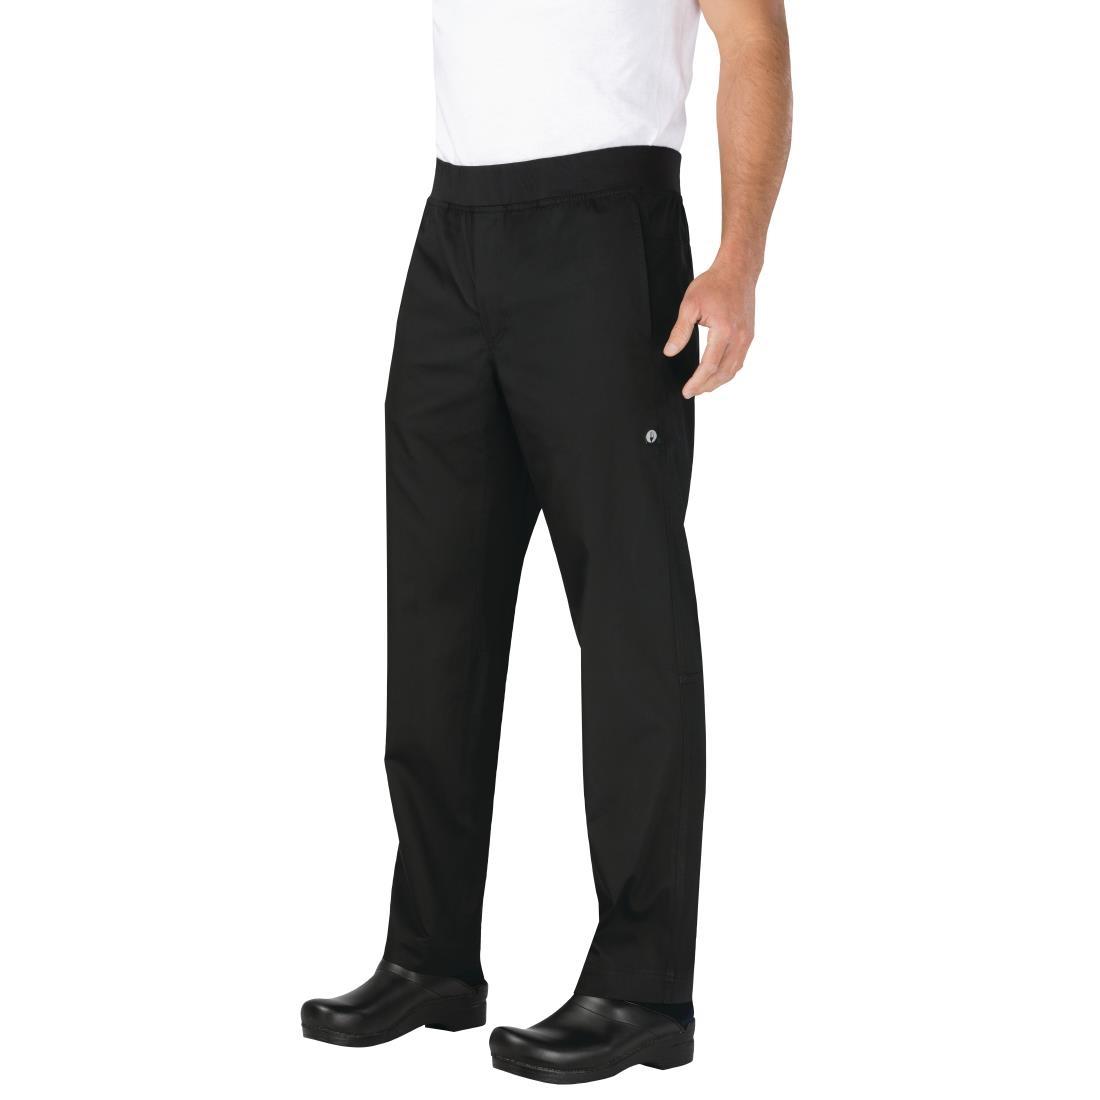 Chef Works Men's Lightweight Slim Trouser Black Size XL - BB301-XL  - 4